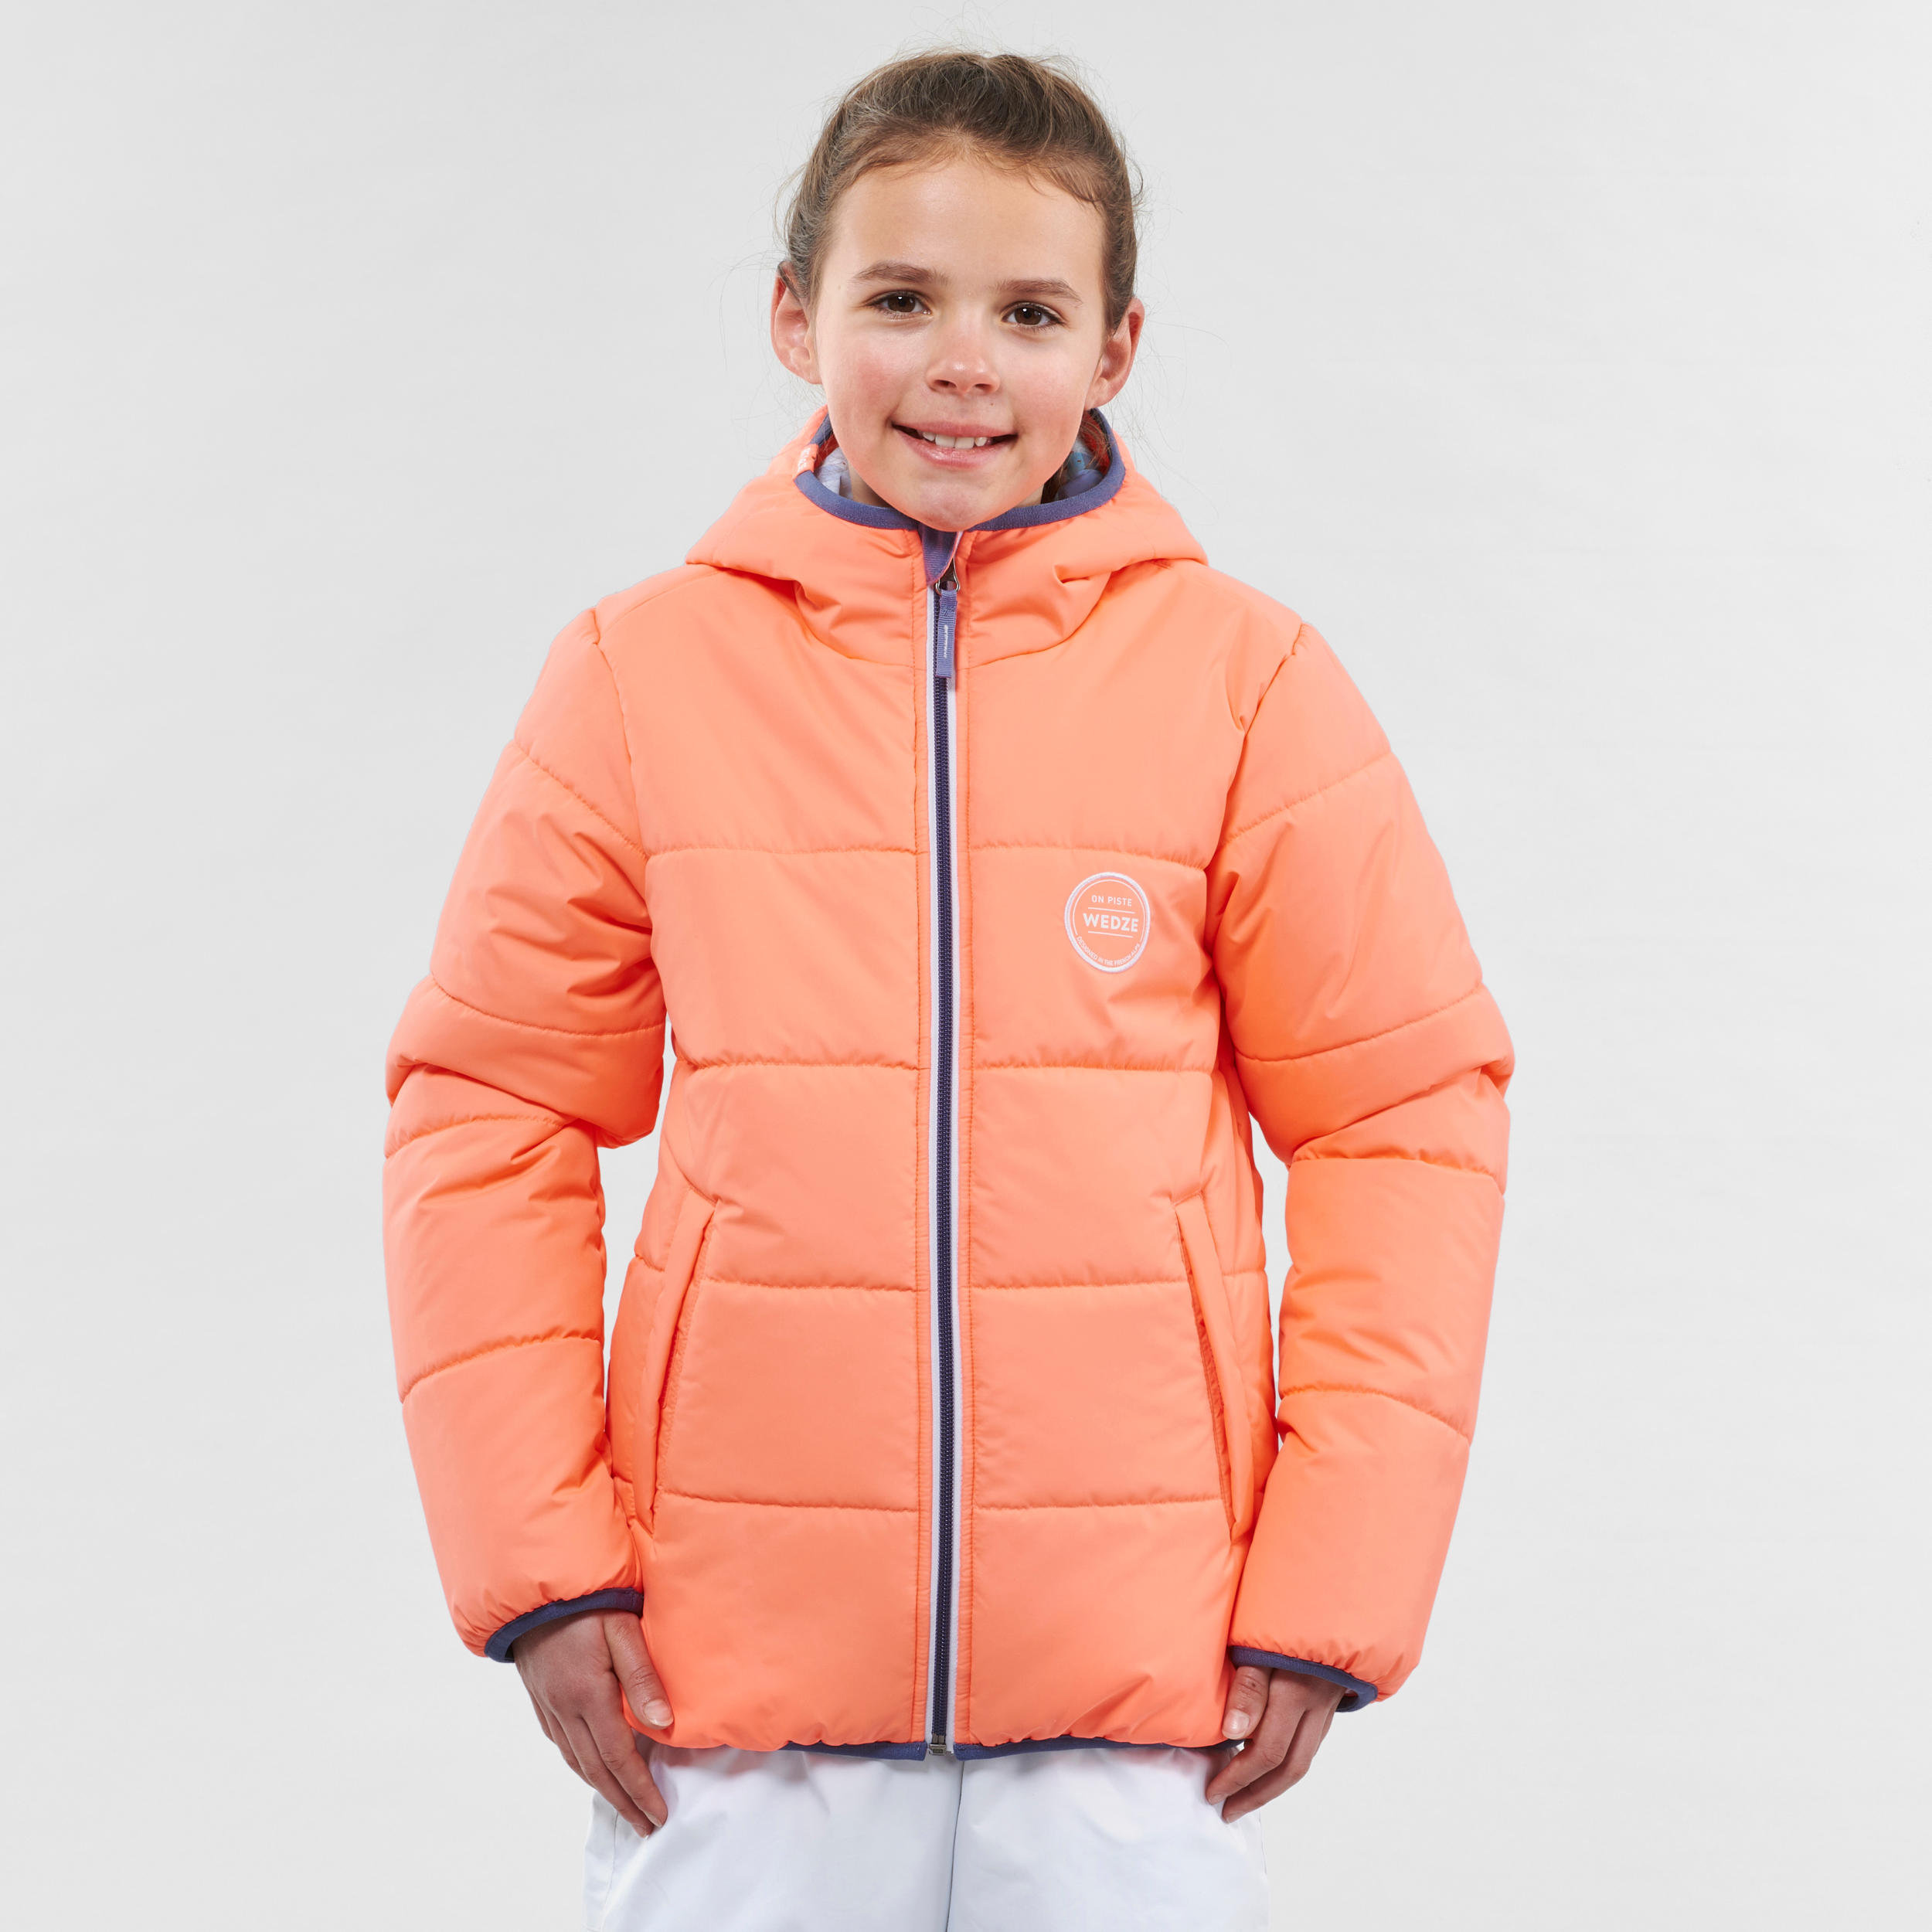 เสื้อแจ็คเก็ตแบบใส่ได้สองด้านสำหรับเด็กใส่เล่นสกีกันหนาวรุ่น 100 (สีส้ม CORAL/ฟ้า) สกี/สโนว์บอร์ด สกี เสื้อแจ็คเก็ต เสื้อผ้าเด็ก